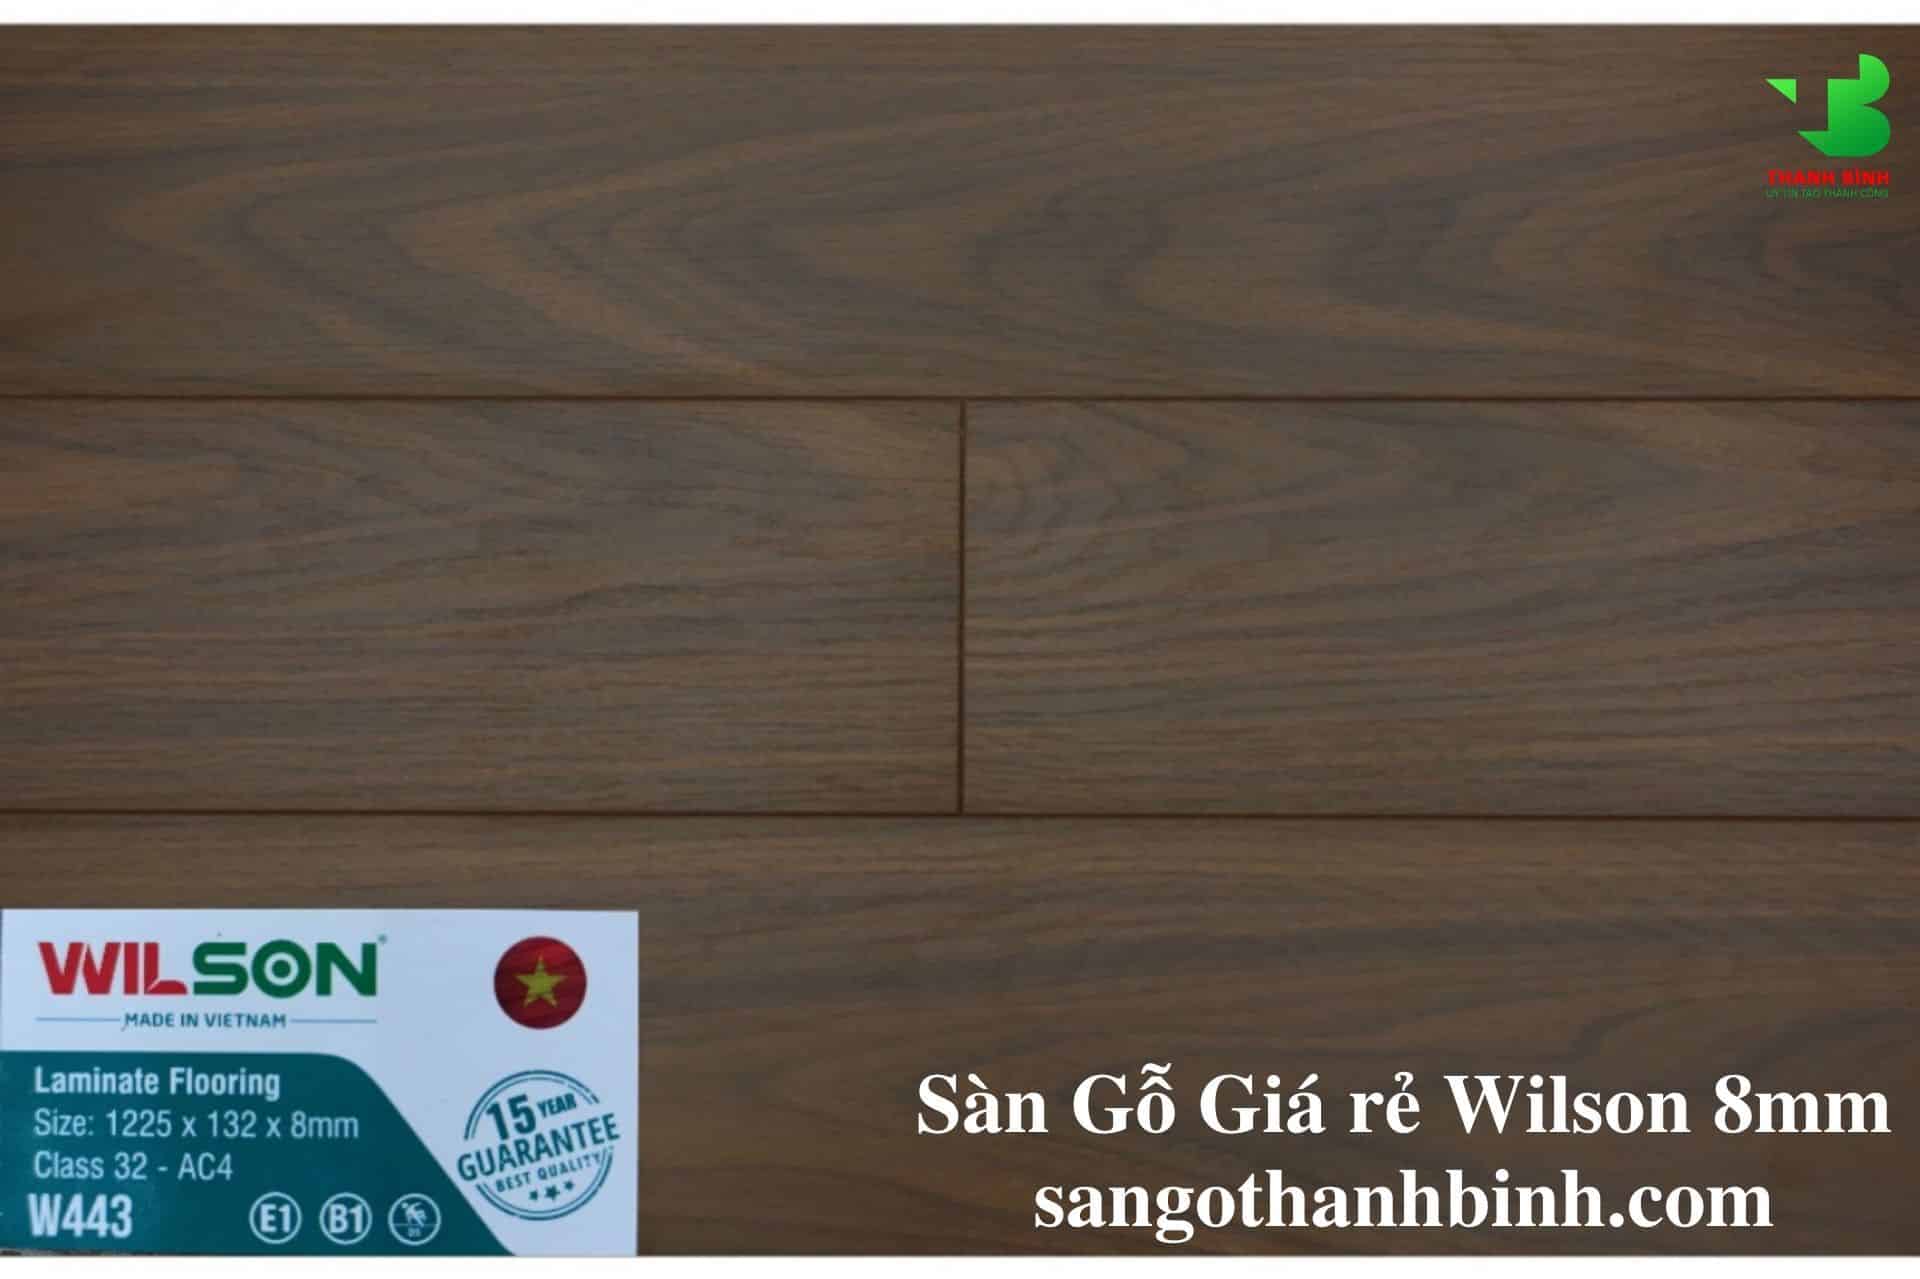 San go Viet Nam Wilson 8mm W443 Ban nho